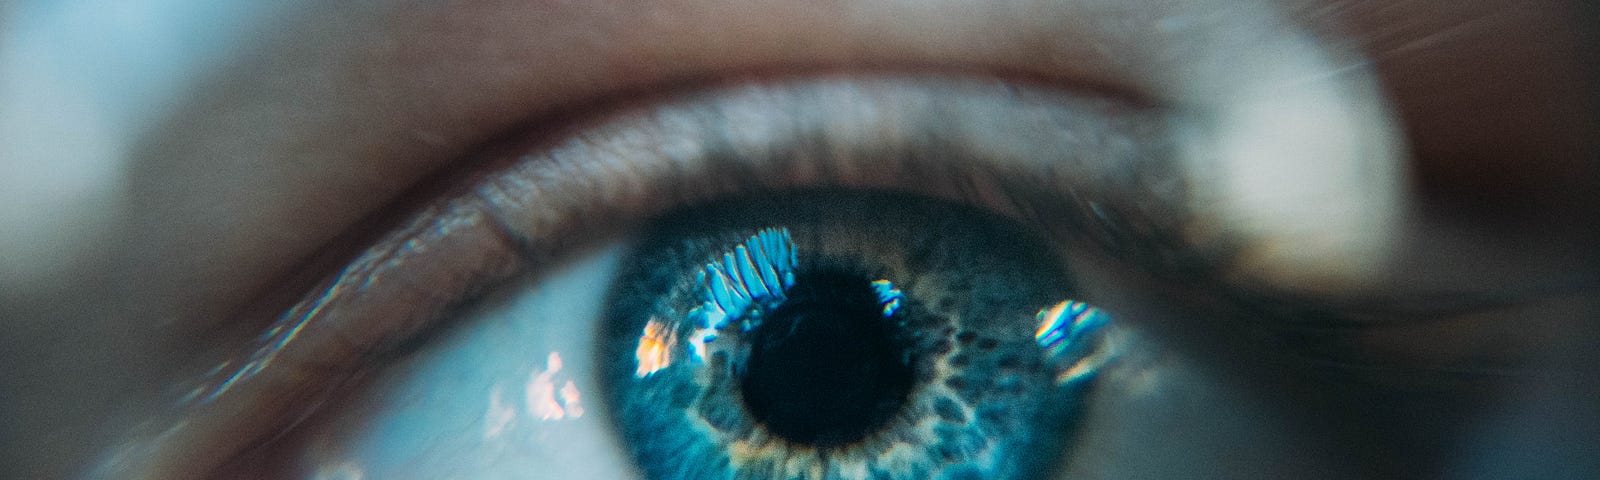 Closeup of an open eye.